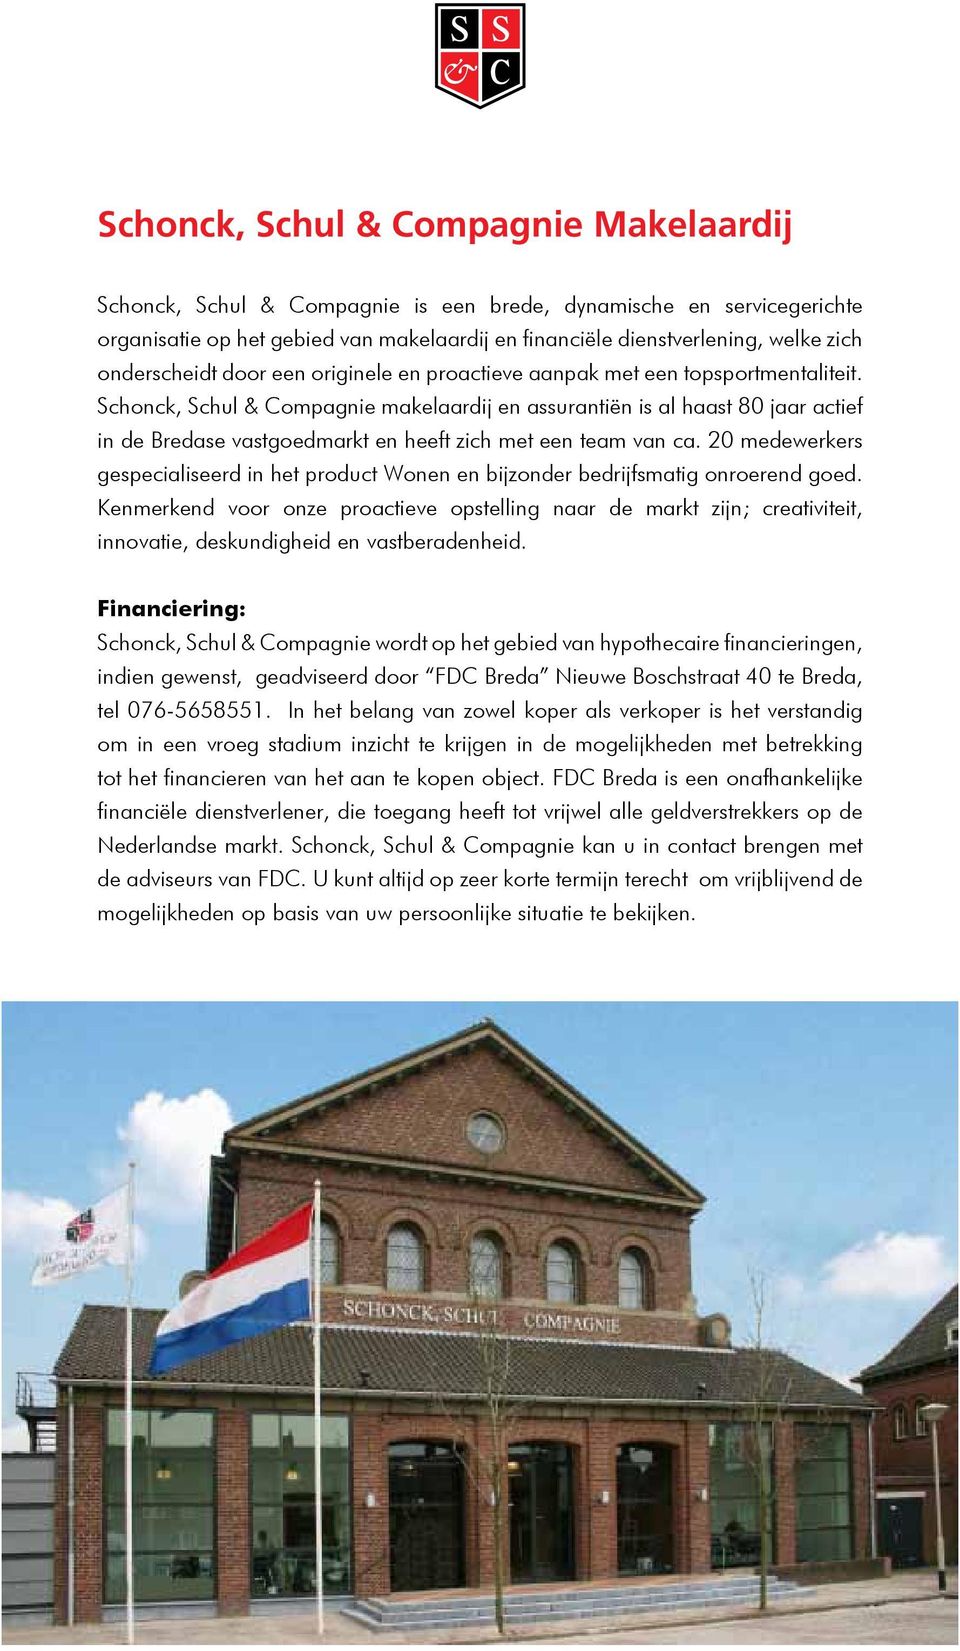 Schonck, Schul & Compagnie makelaardij en assurantiën is al haast 80 jaar actief in de Bredase vastgoedmarkt en heeft zich met een team van ca.